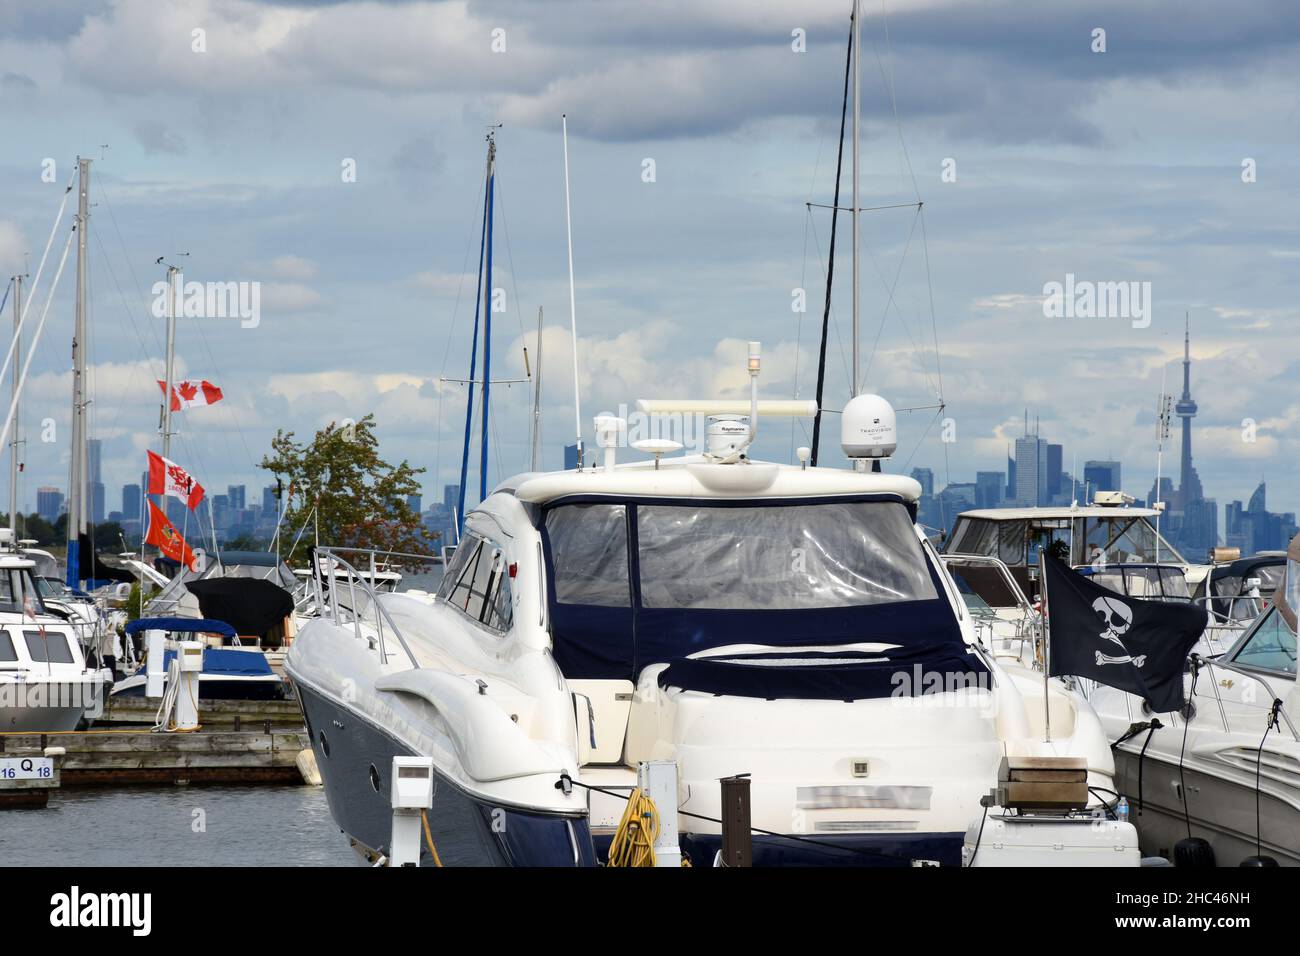 Îles de Toronto - Marina pleine de bateaux, Canada Banque D'Images